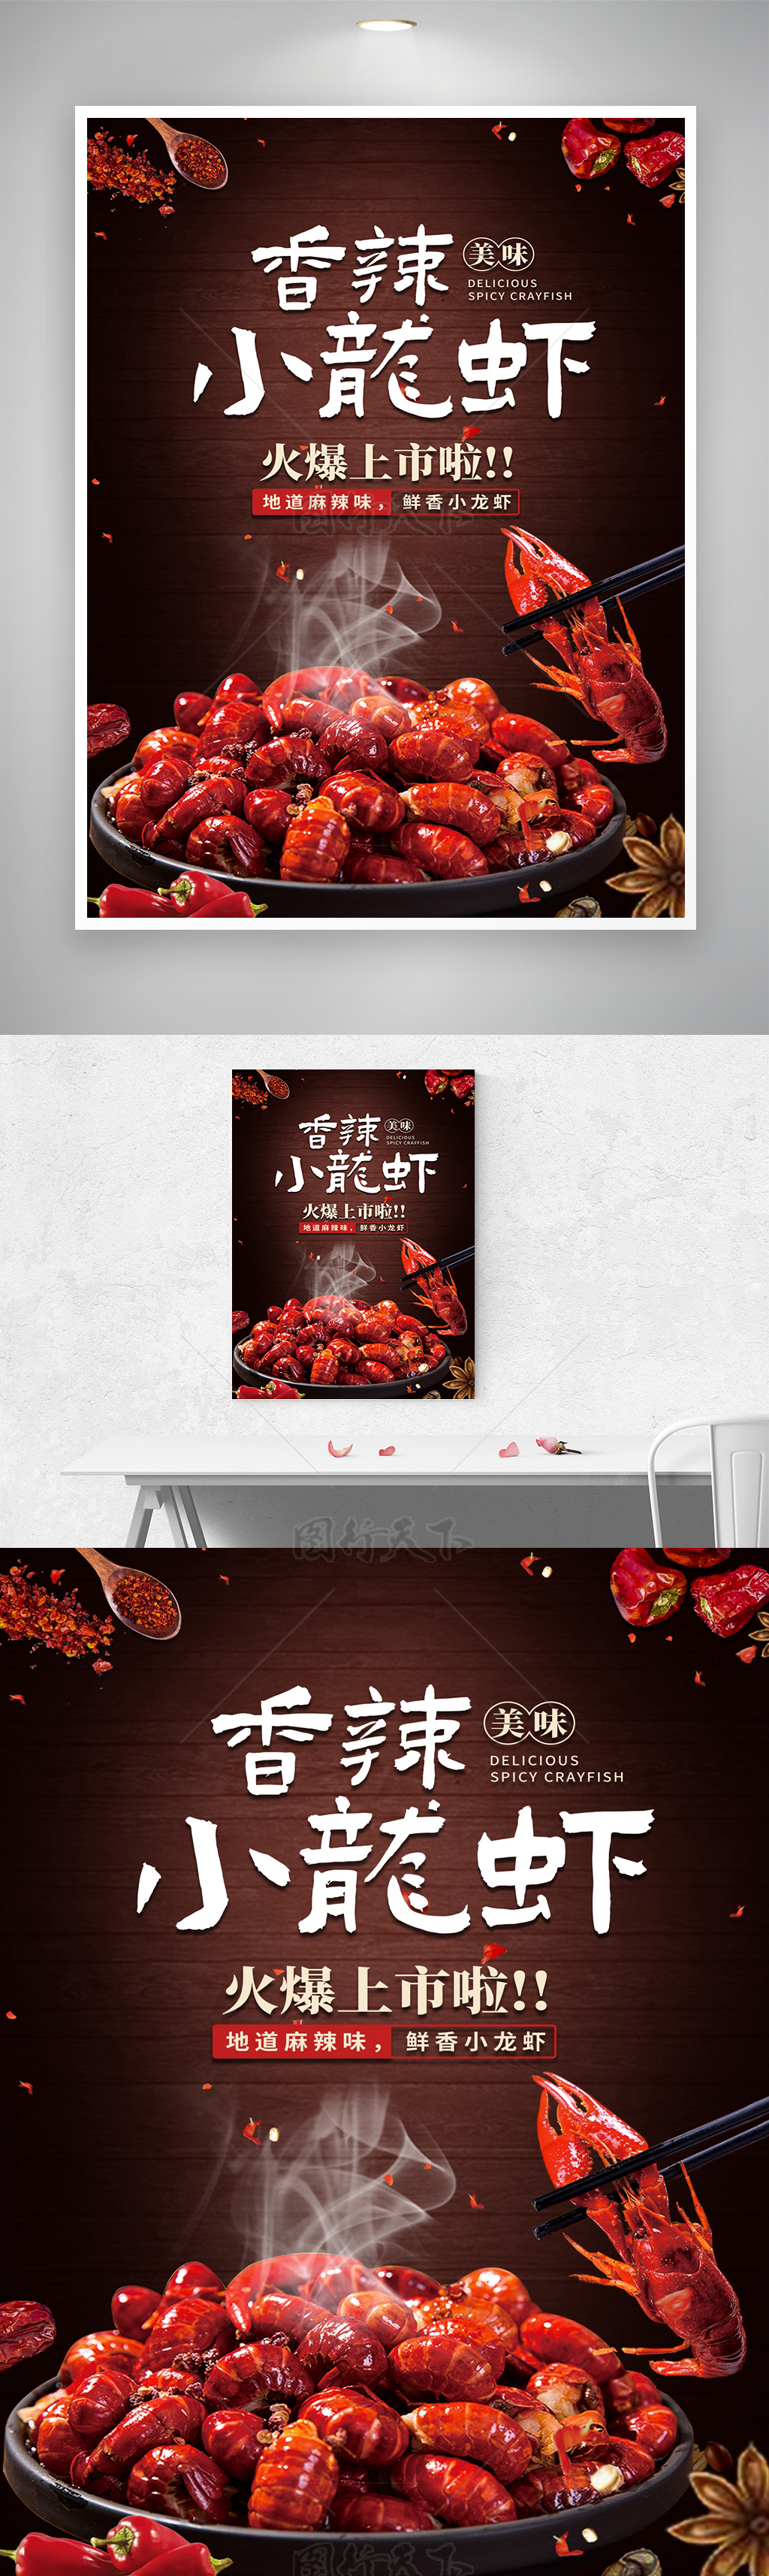 火爆香辣小龙虾活动宣传海报